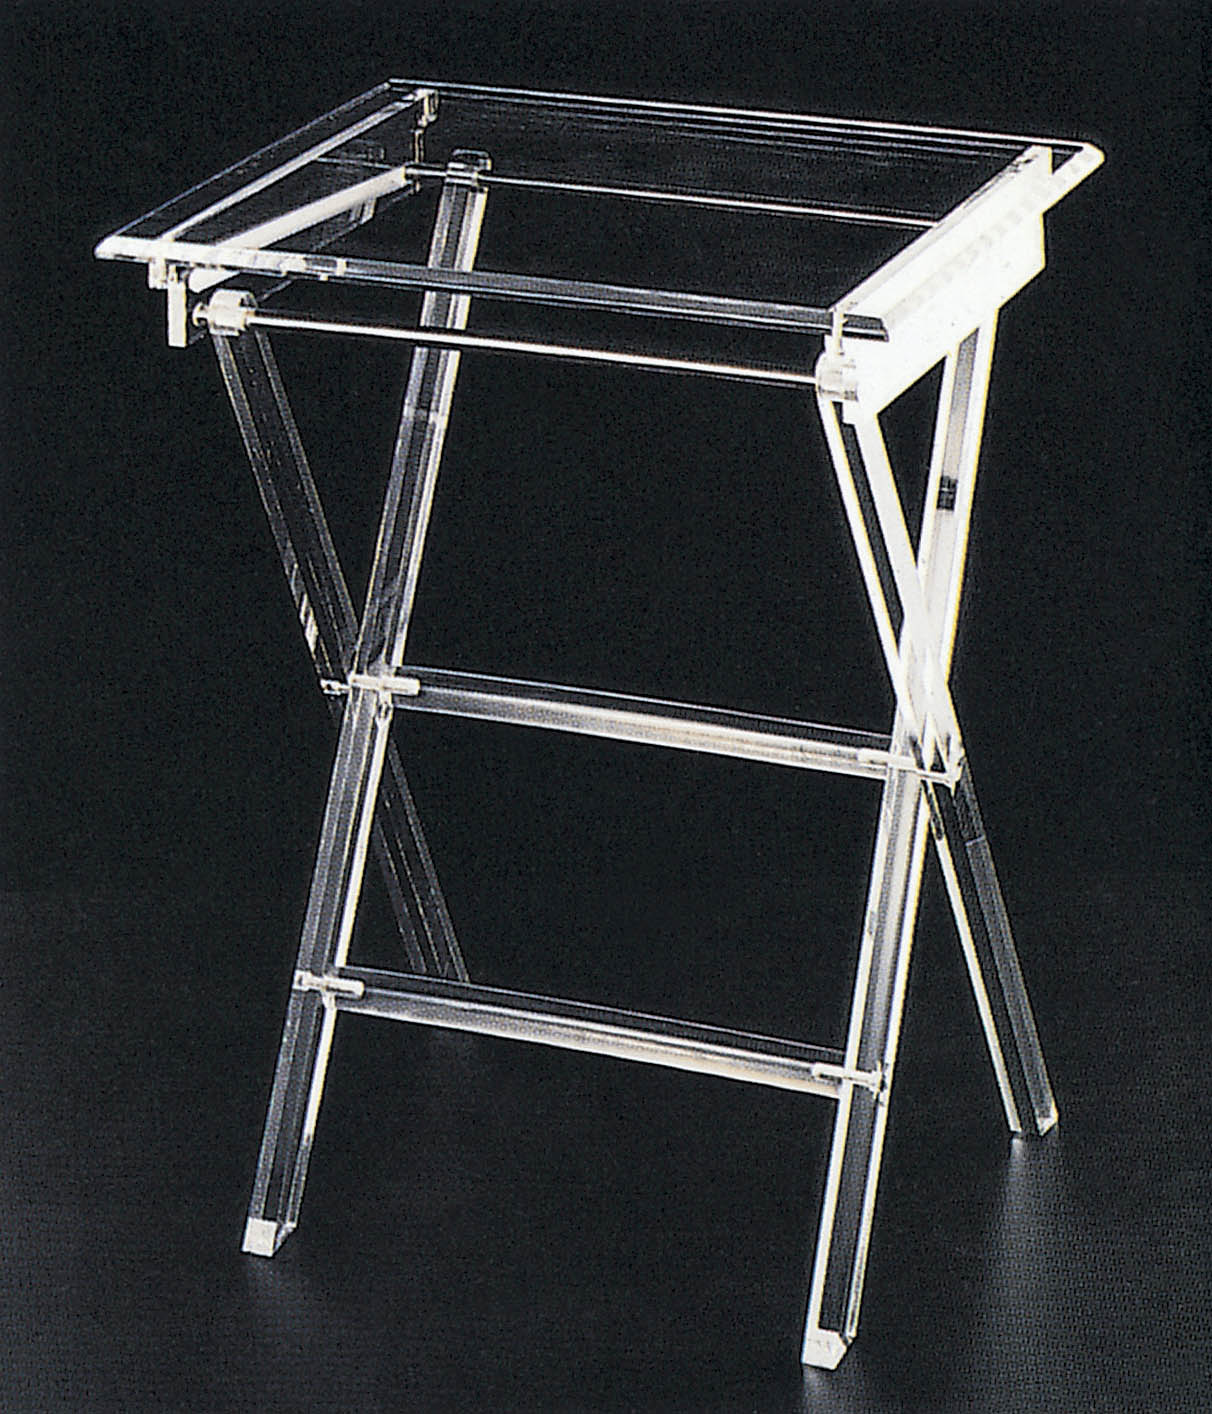 Clarté Acrylic Folding Table